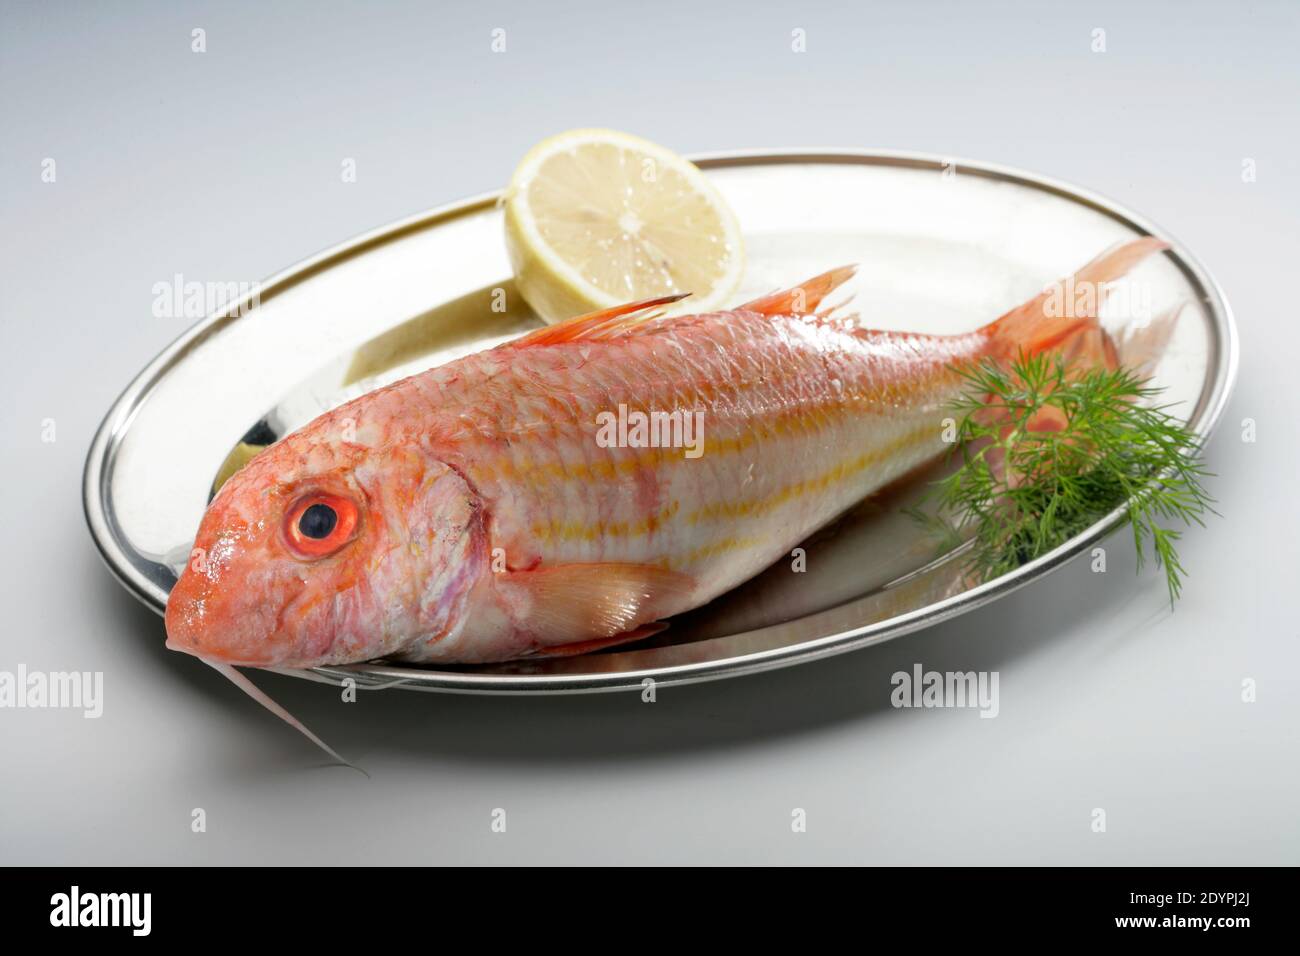 ryba, parmices nachova, ryba na tácku, ryba k jídlu Photo Stock - Alamy